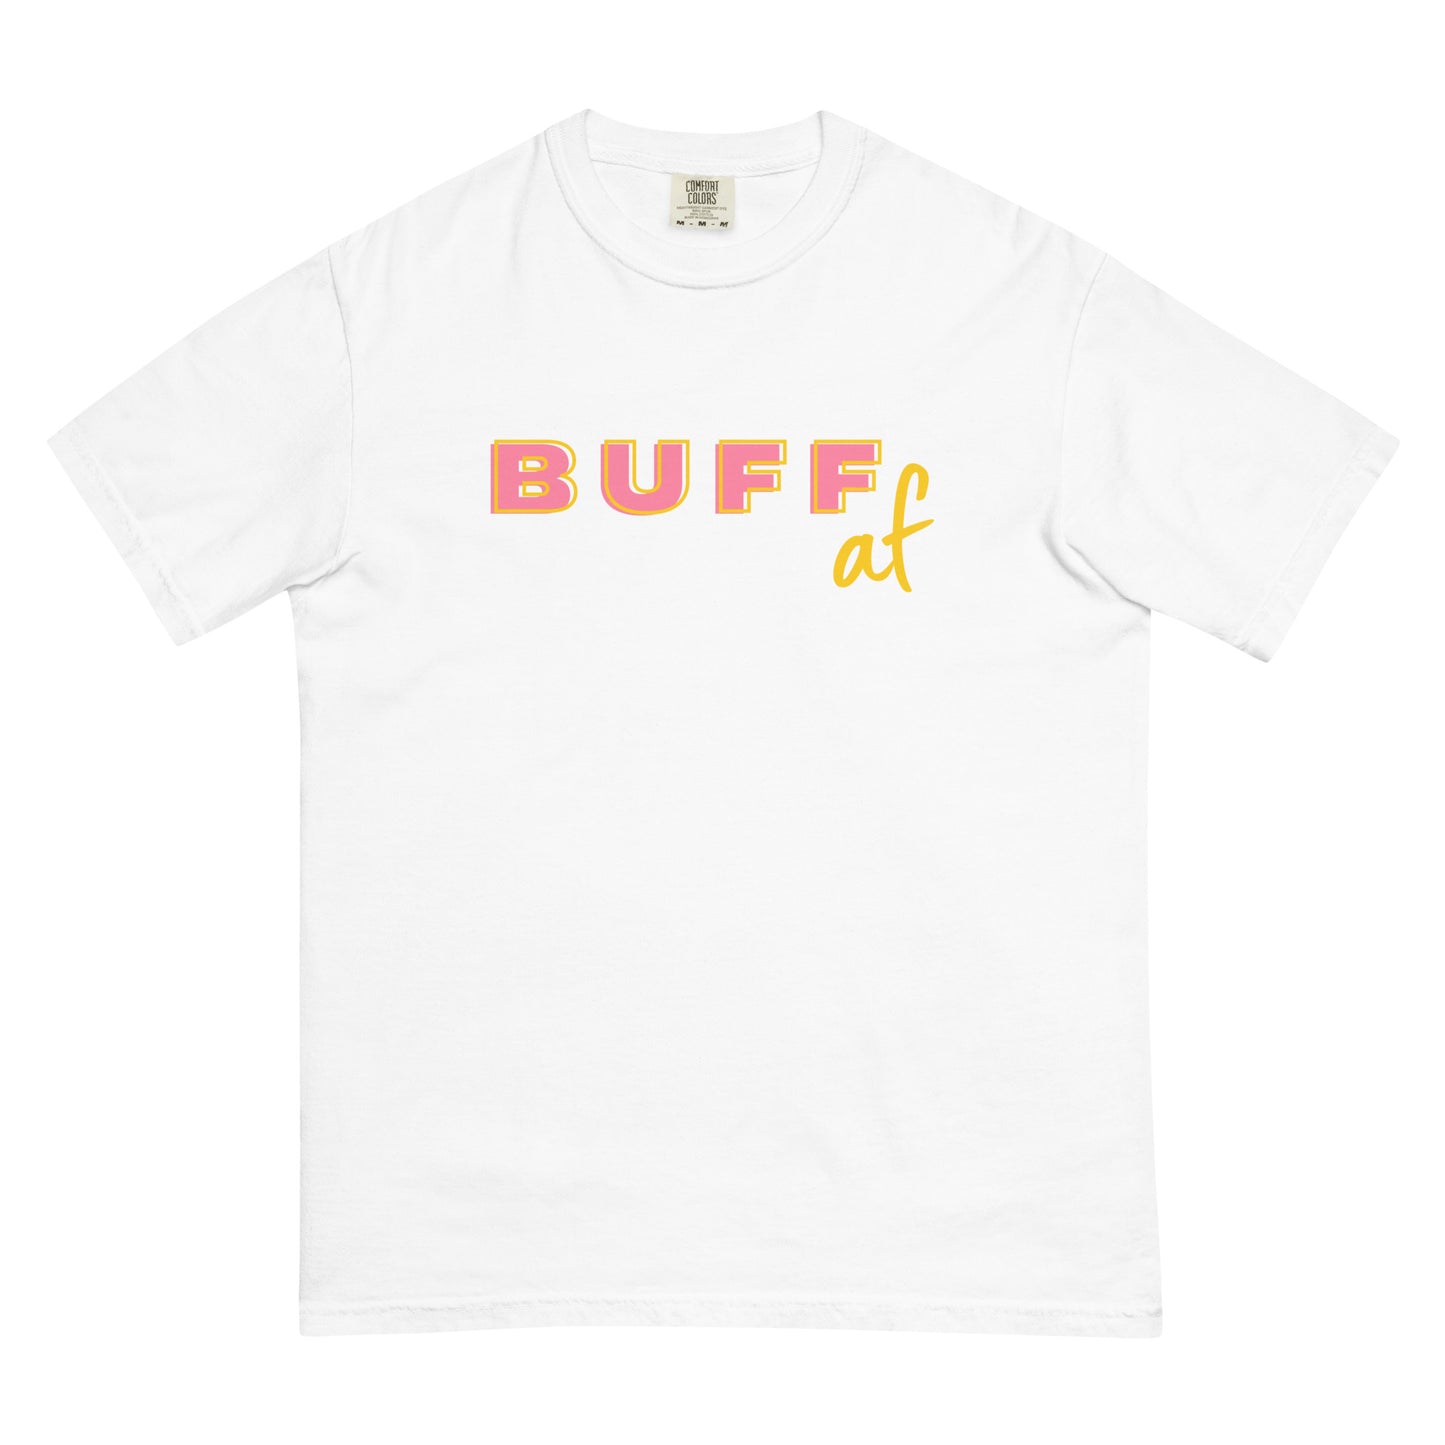 BUFF AF (pink/yellow) - Men’s garment-dyed heavyweight t-shirt